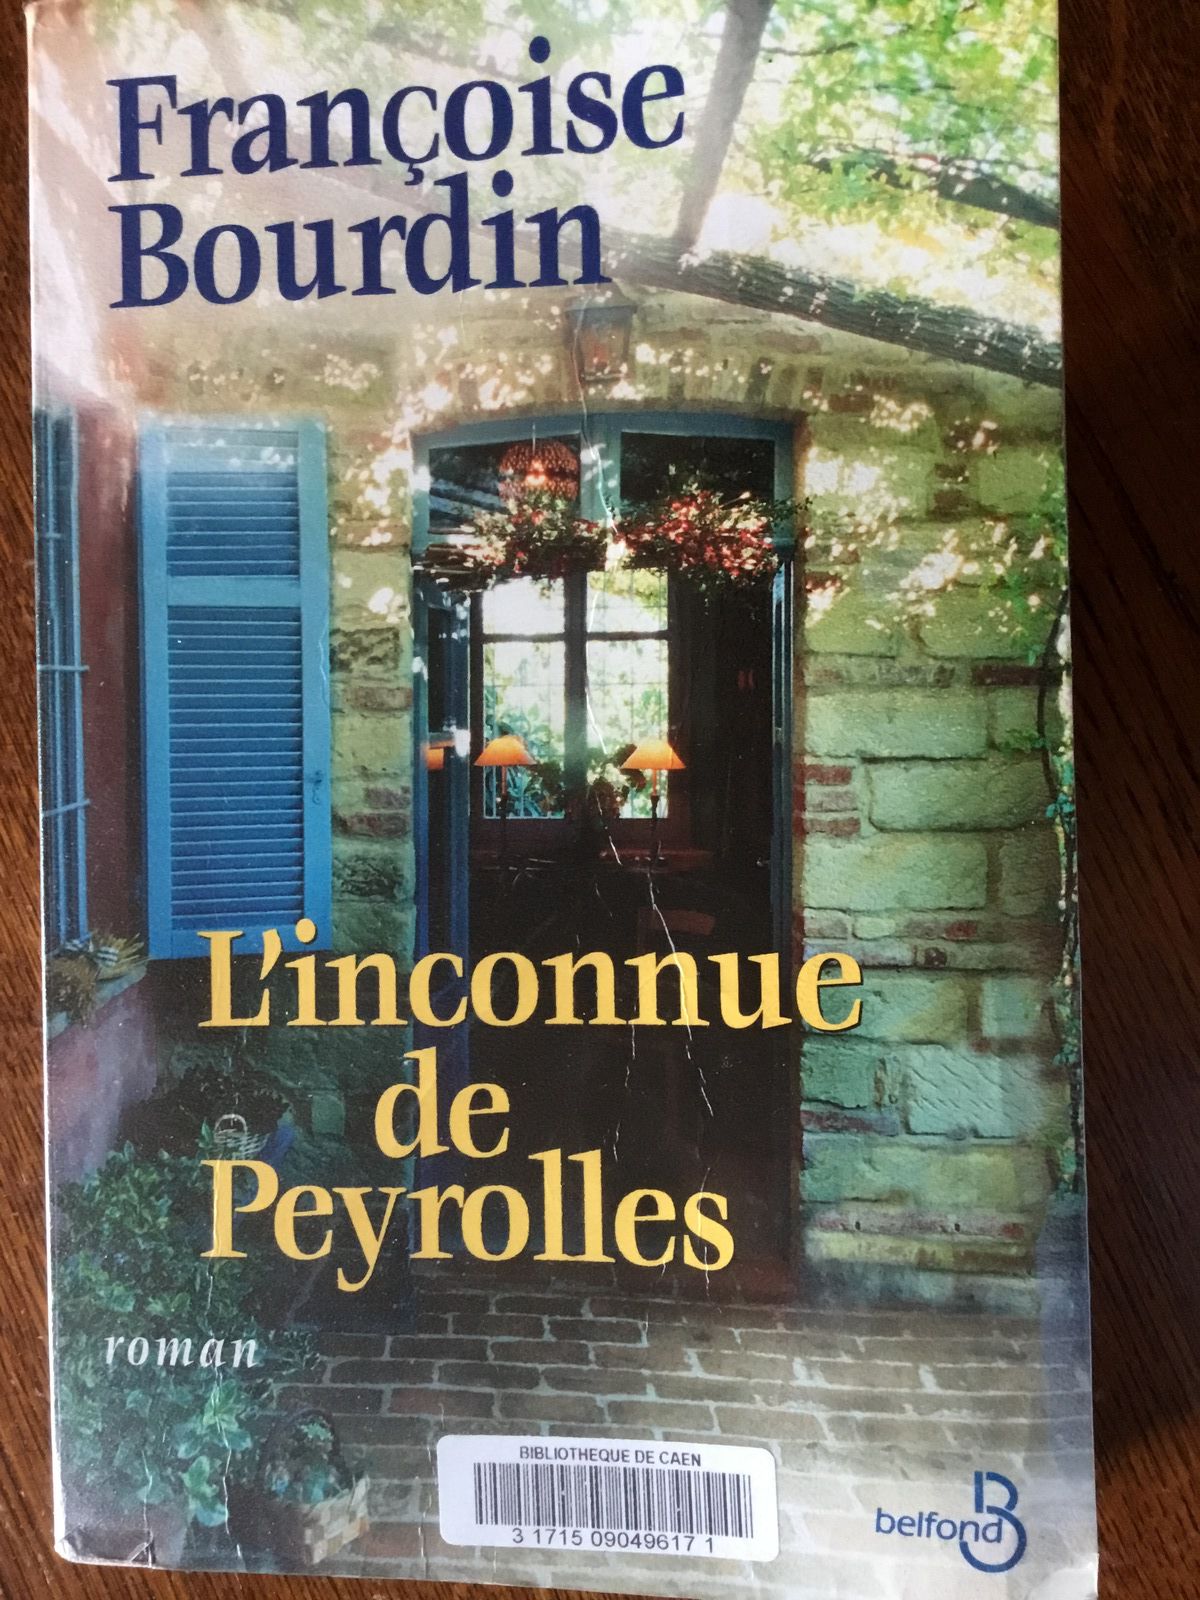 L'inconnue de Peyrolles de Françoise Bourdin : un roman captivant